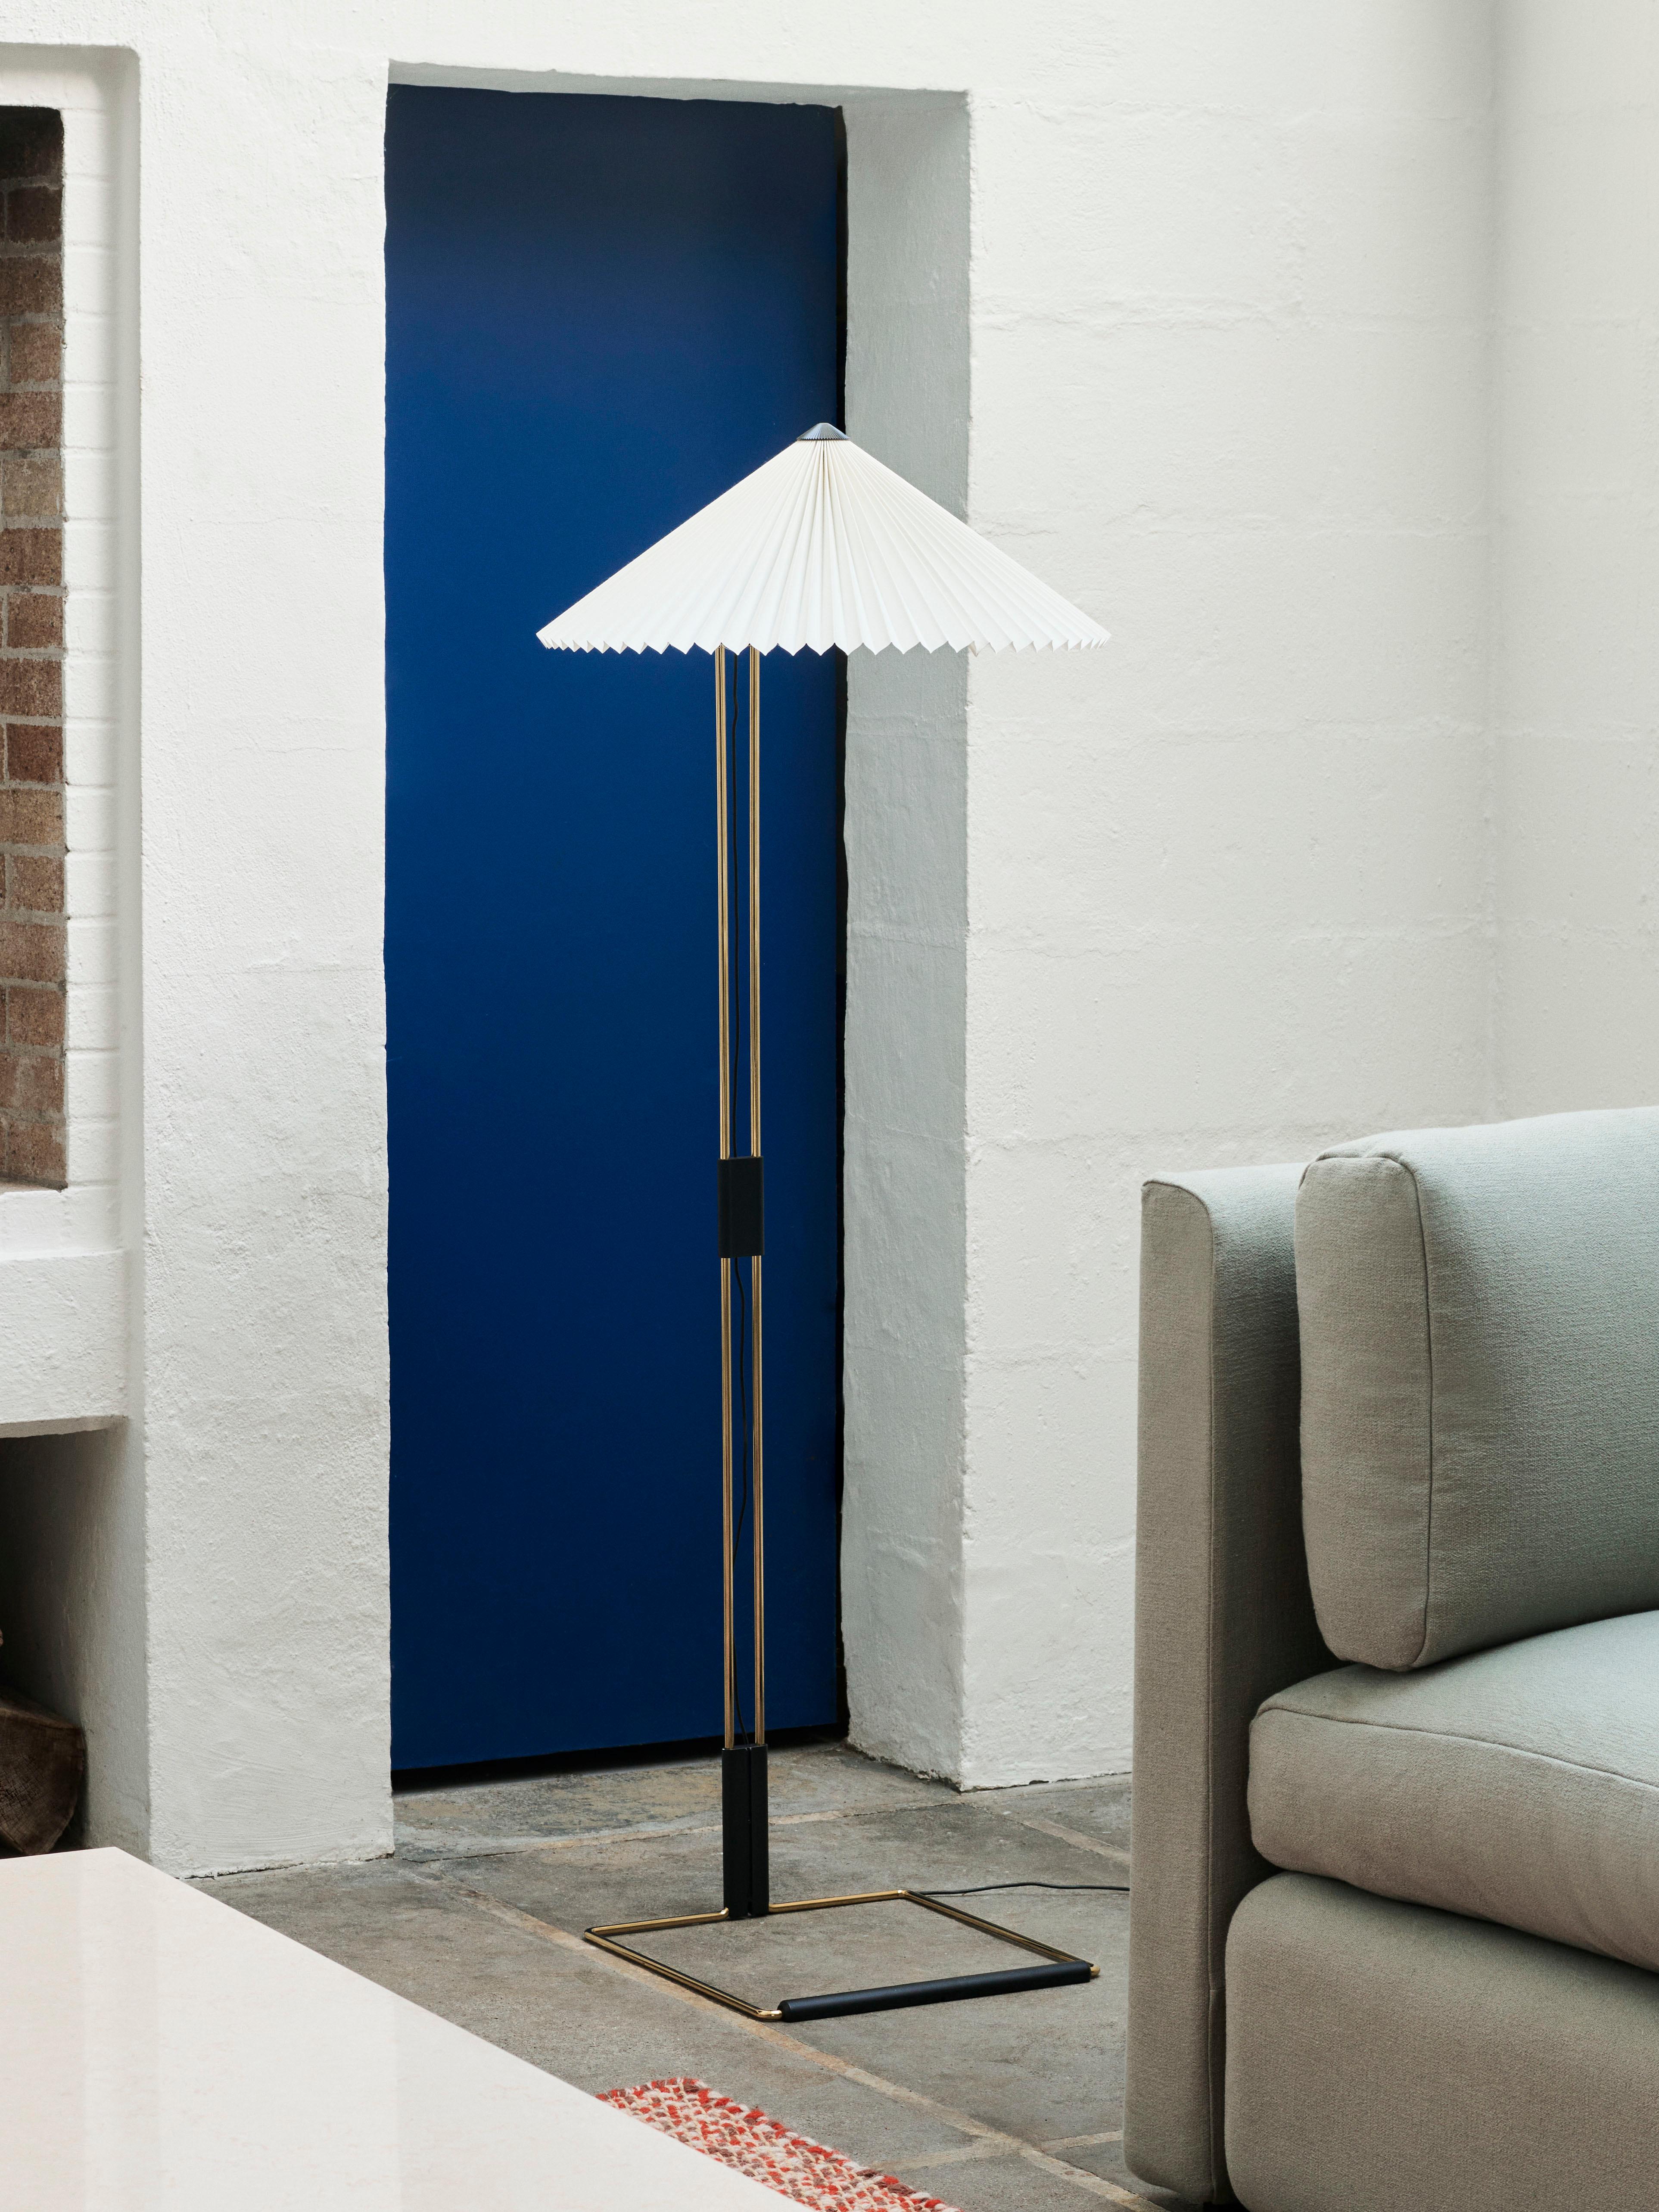 Le lampadaire Matin offre un design à la fois contemporain et poétique, avec une construction qui allie délicatesse visuelle et robustesse physique. 

La conception à plat se compose d'un cadre élancé en acier en laiton poli complété par une